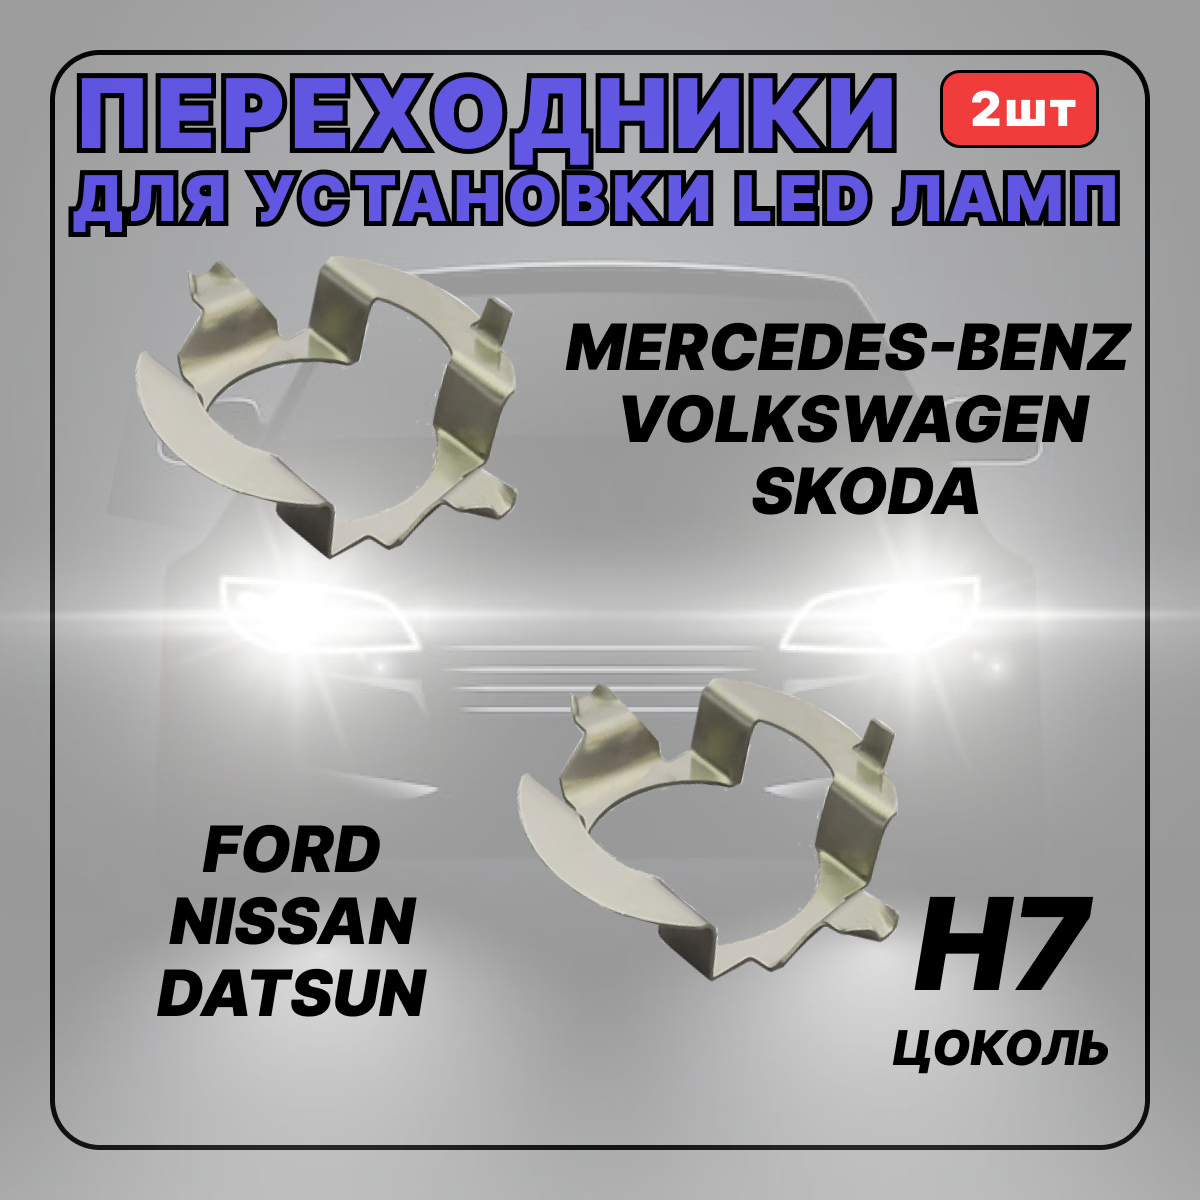 Переходник(адаптер) h7 для установки светодиодных ламп Skoda, Volkswagen, Nissan, Mercedes Benz, 2 шт